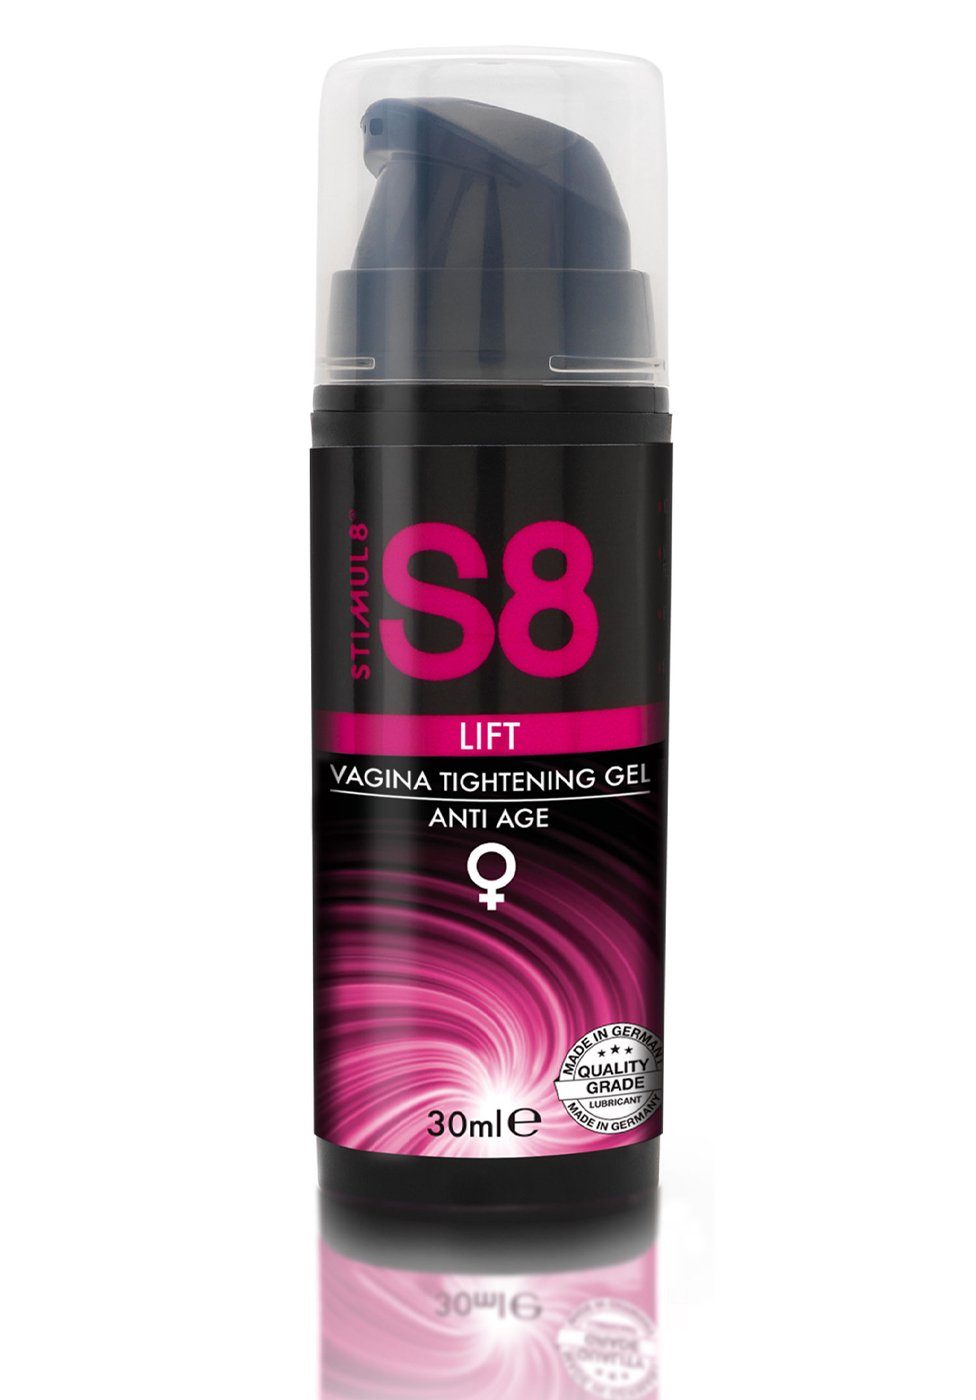 Stimul8 S8 Stimulationsgel Vagina Tightening Gel Lift - 30 ml